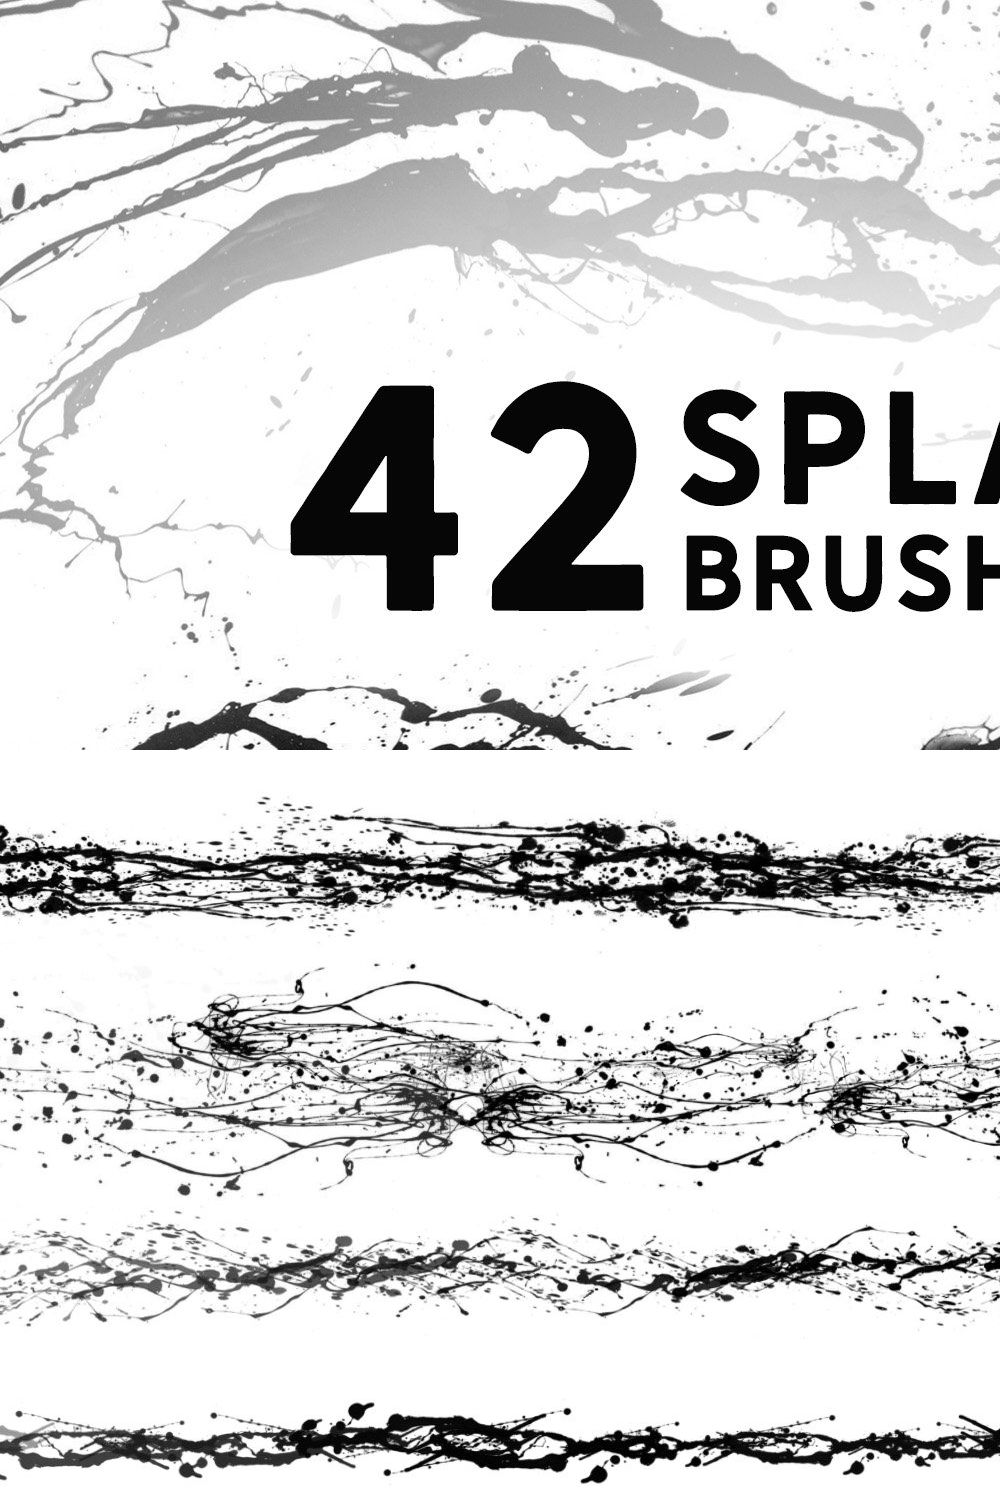 42 Splatter brushes pinterest preview image.